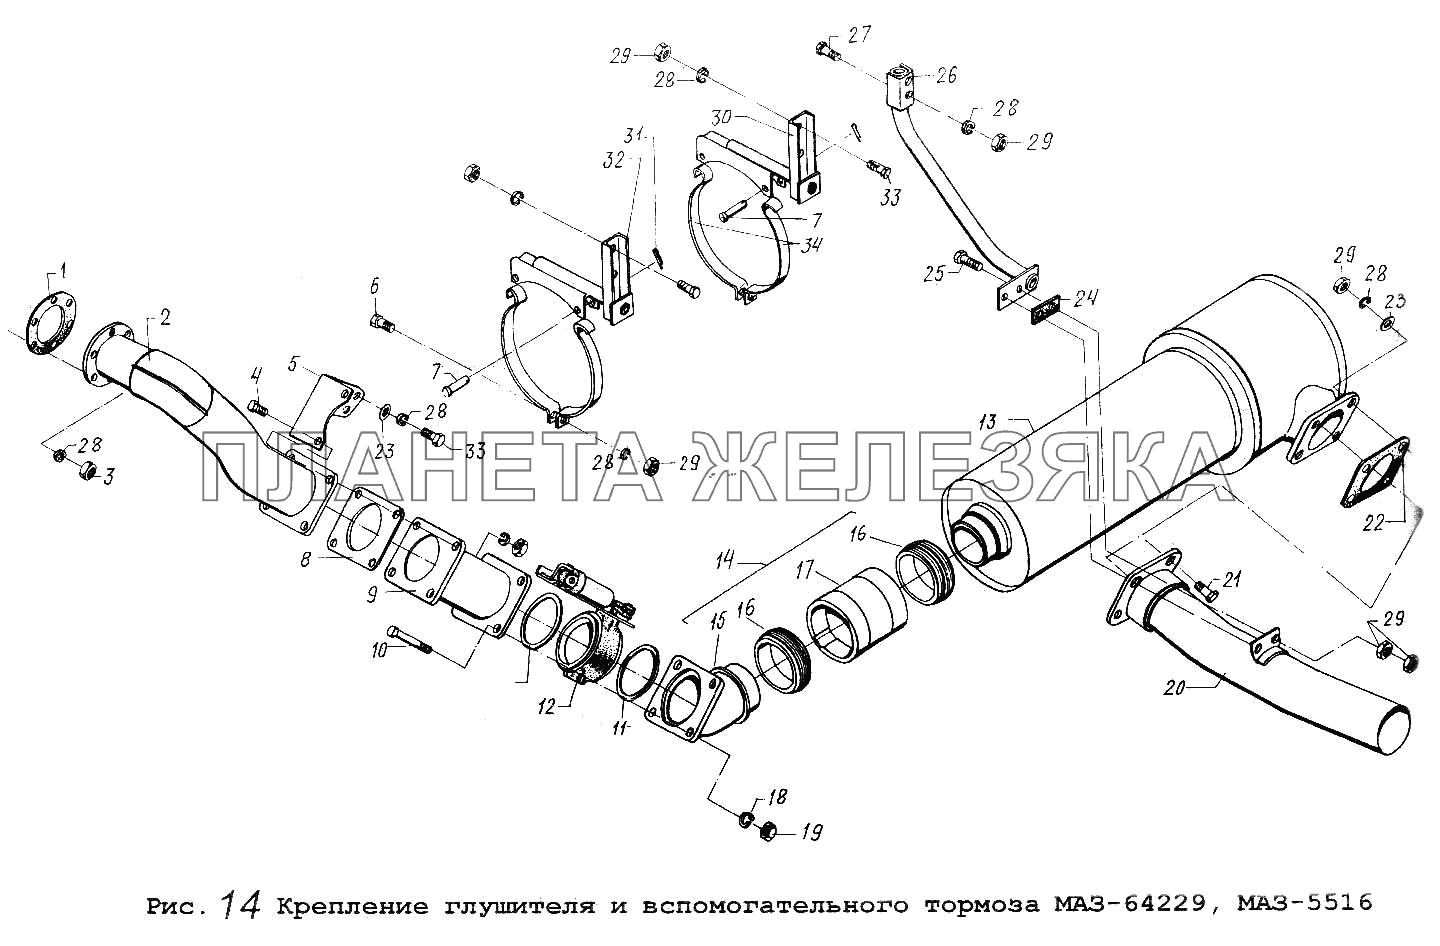 Крепление глушителя и вспомогательного тормоза МАЗ-64229, МАЗ-5516 МАЗ-5516